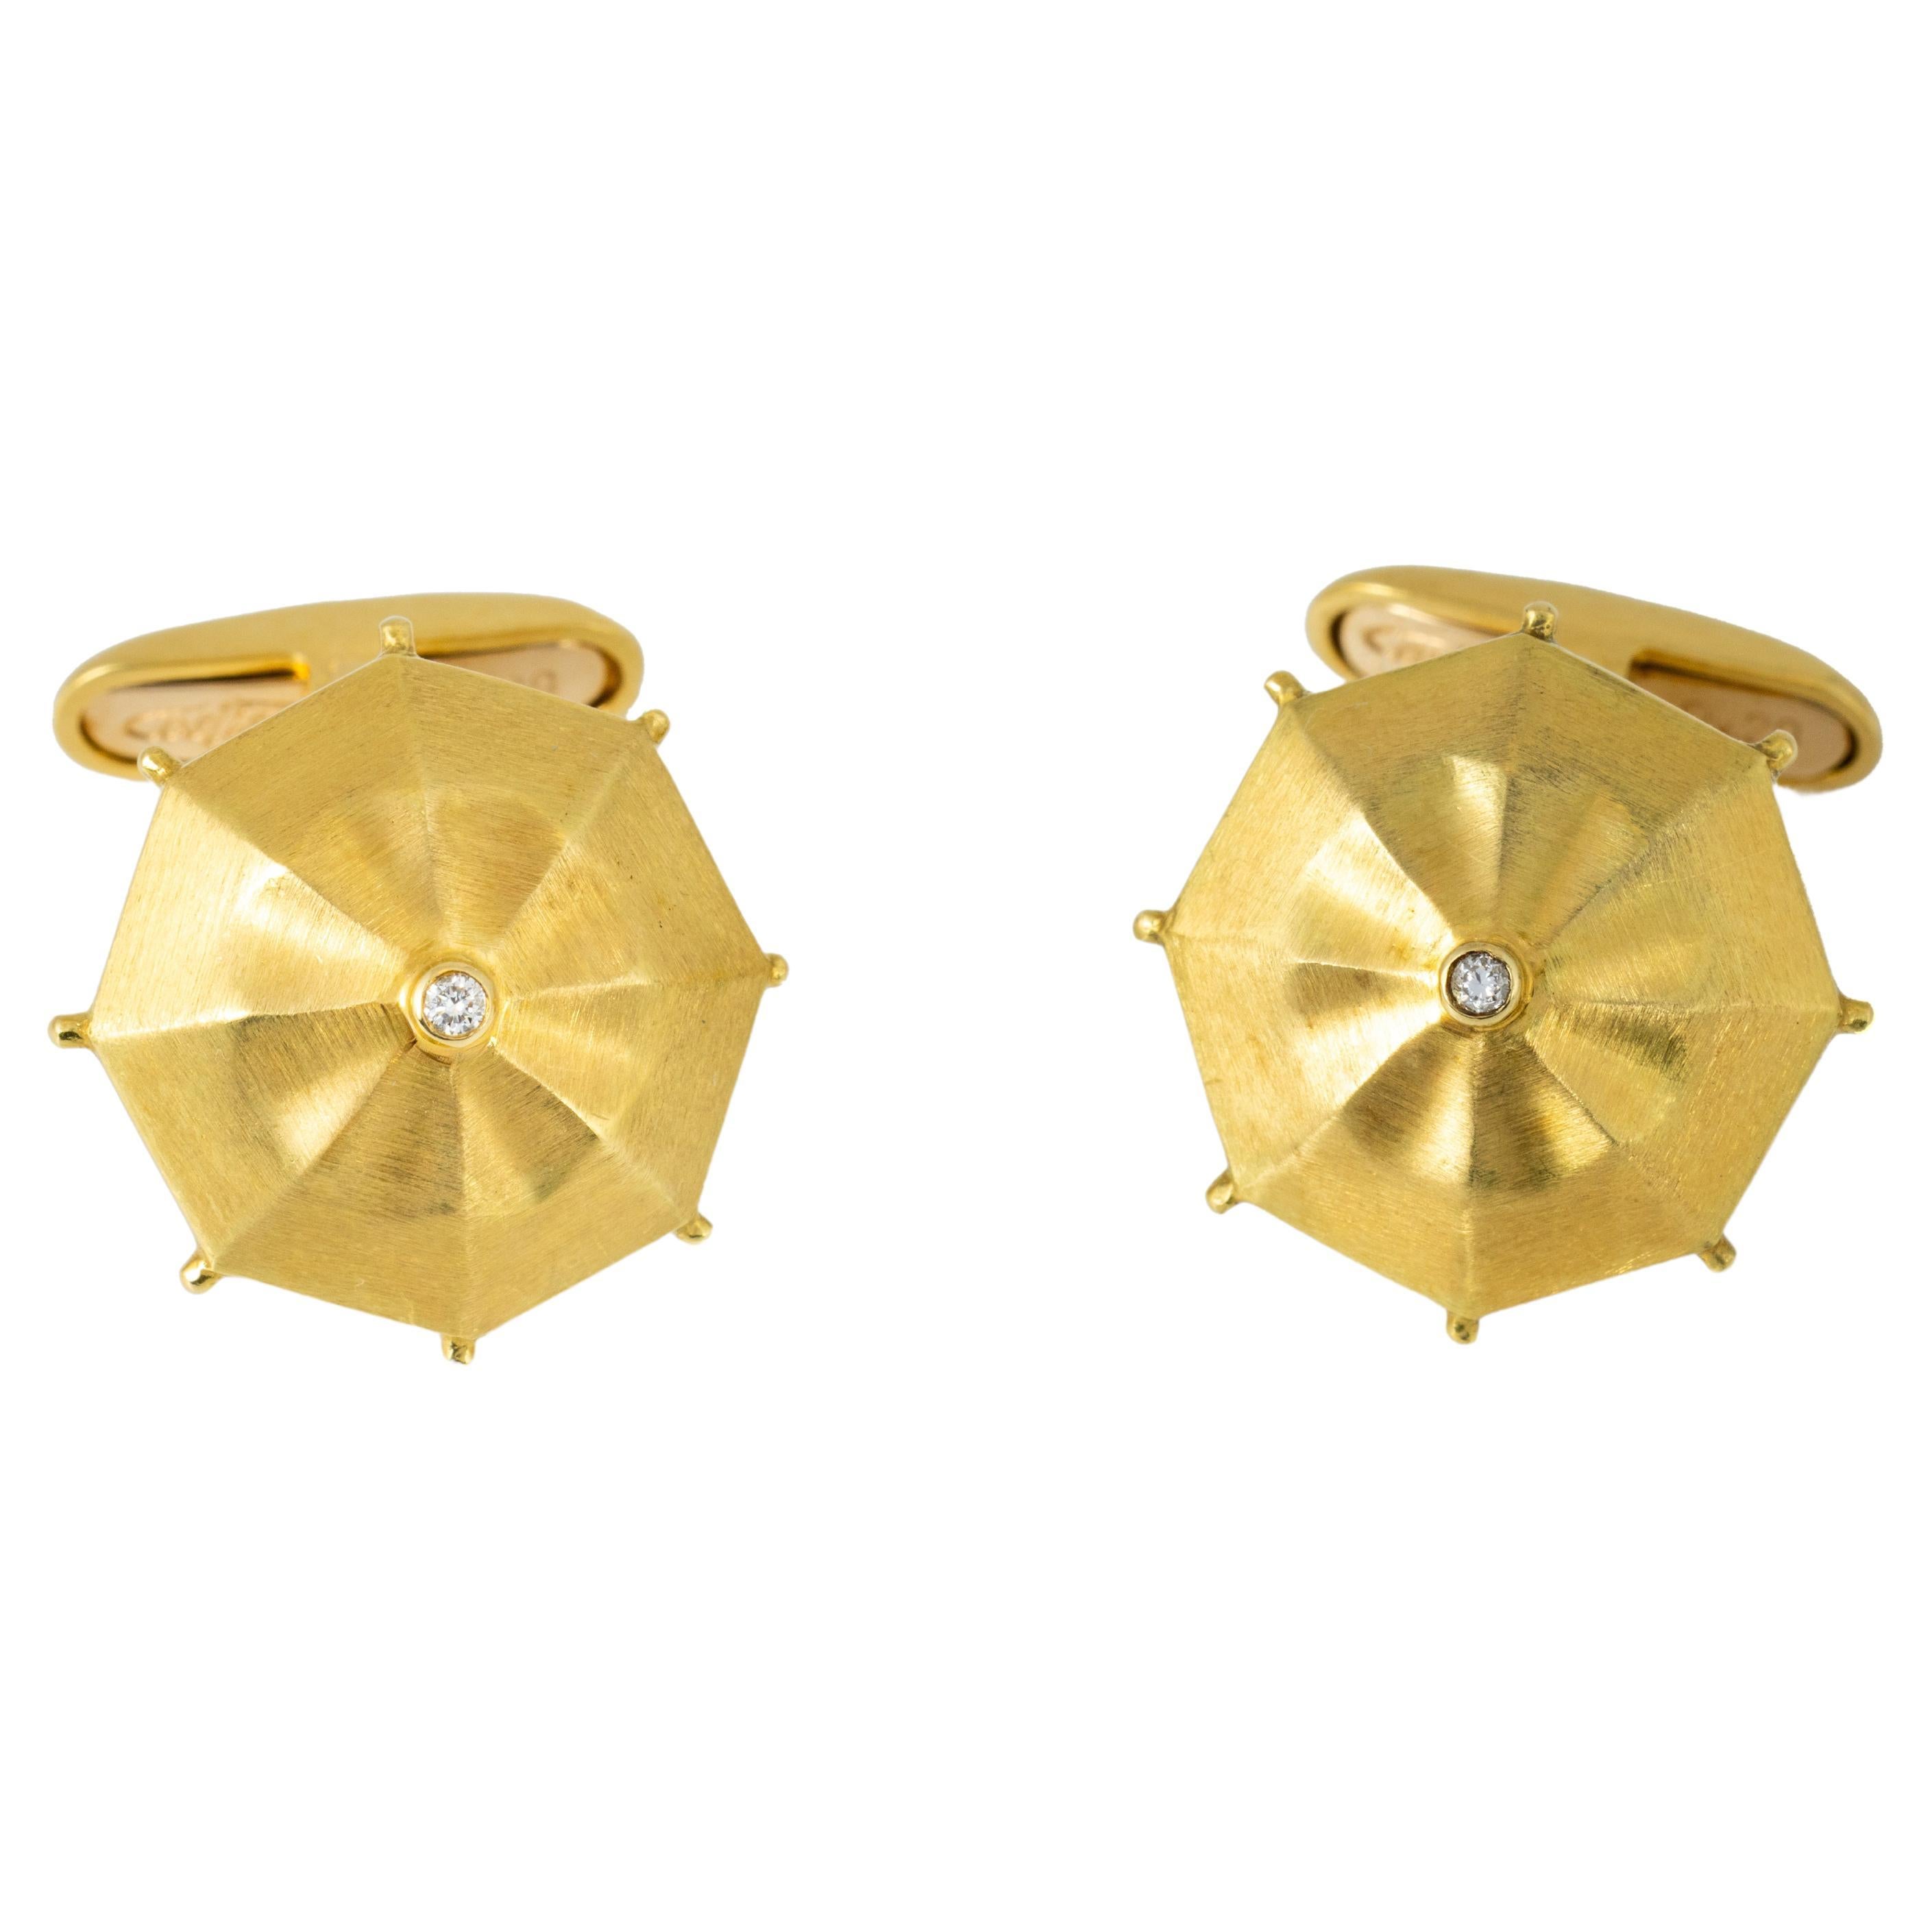 "Costis" Umbrella Collection Manschettenknöpfe YG mit 0,04 Karat Diamant in der Mitte